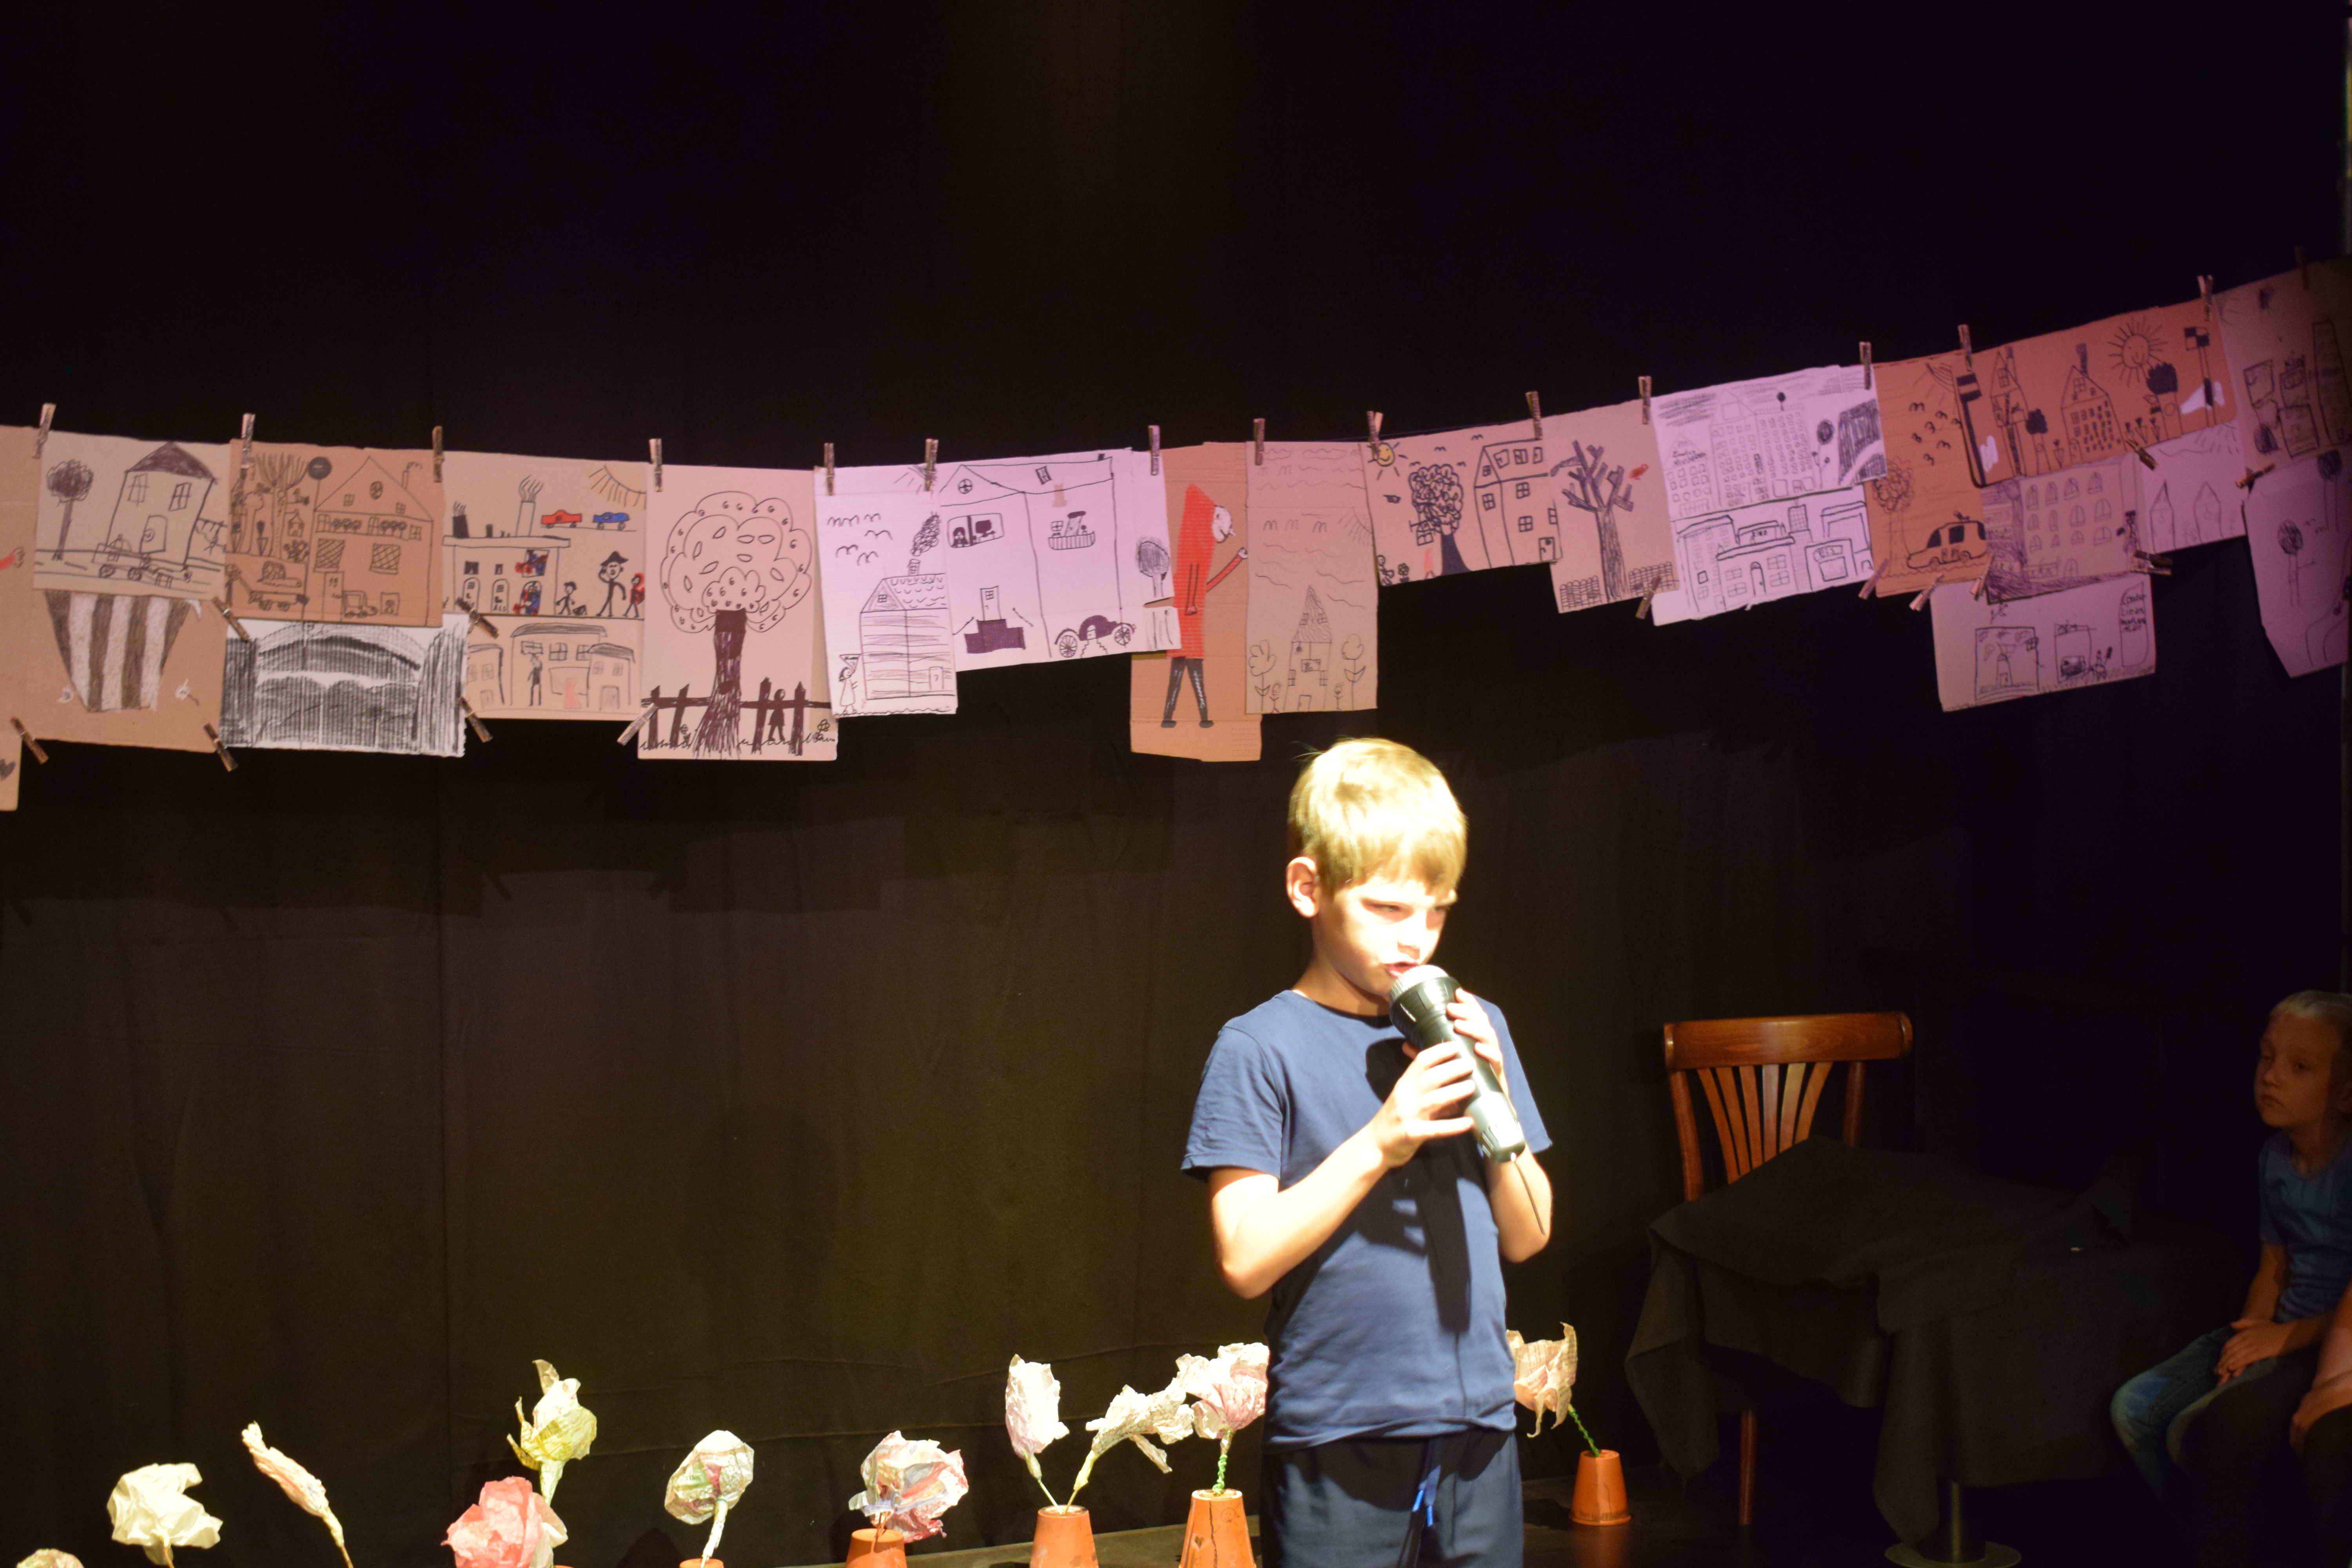 Ein etwa siebenjähriger Junge steht auf der Bühne mit einem Mikrophon in beden Händen. Über ihm sind Kinderzeichnungen an einer Schnur aufgereiht. Hinter ihm stehen im unteren Bildbereich umgedrehte Blumentöpfe, in denen gebastelte Papierblumen stecken. Rechts zeichnen sich im Dunkel zwei Kinder an, die den Jungen anschauen.